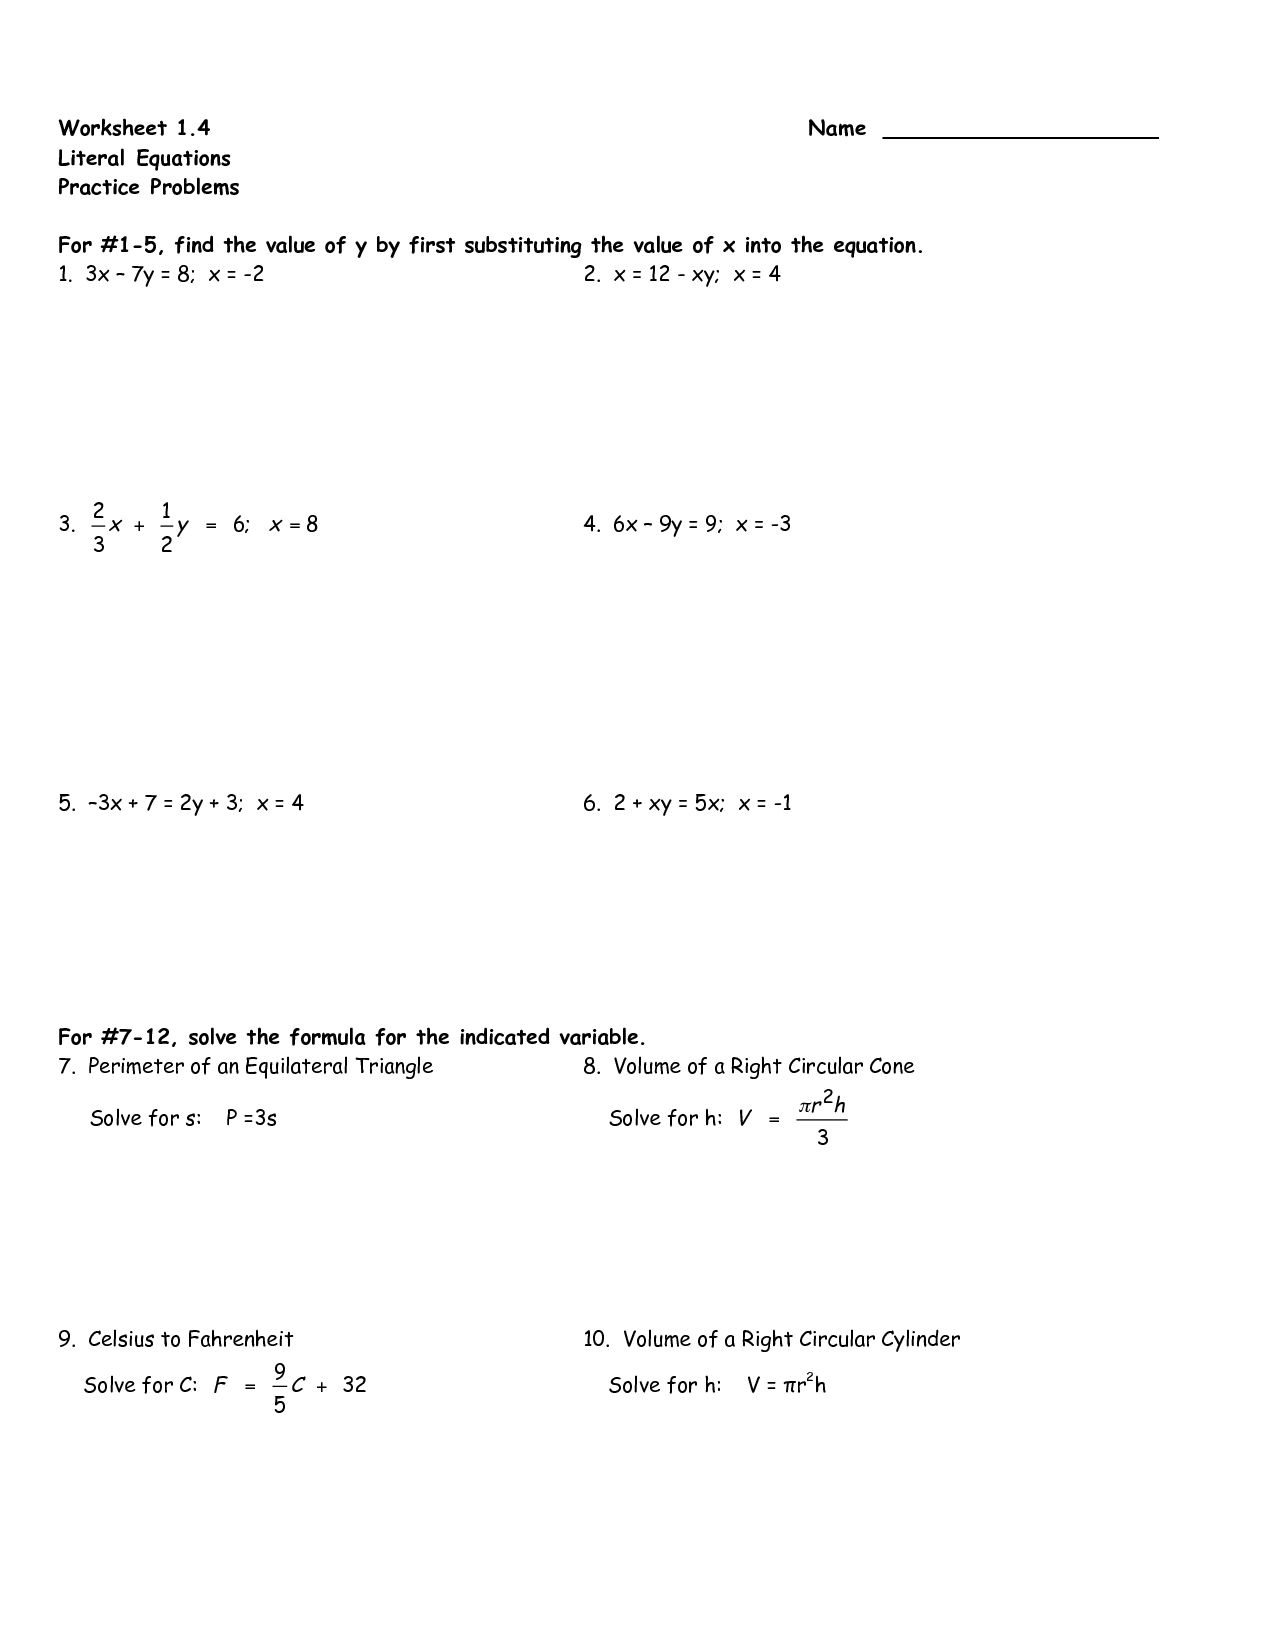 Solving Literal Equations Worksheet